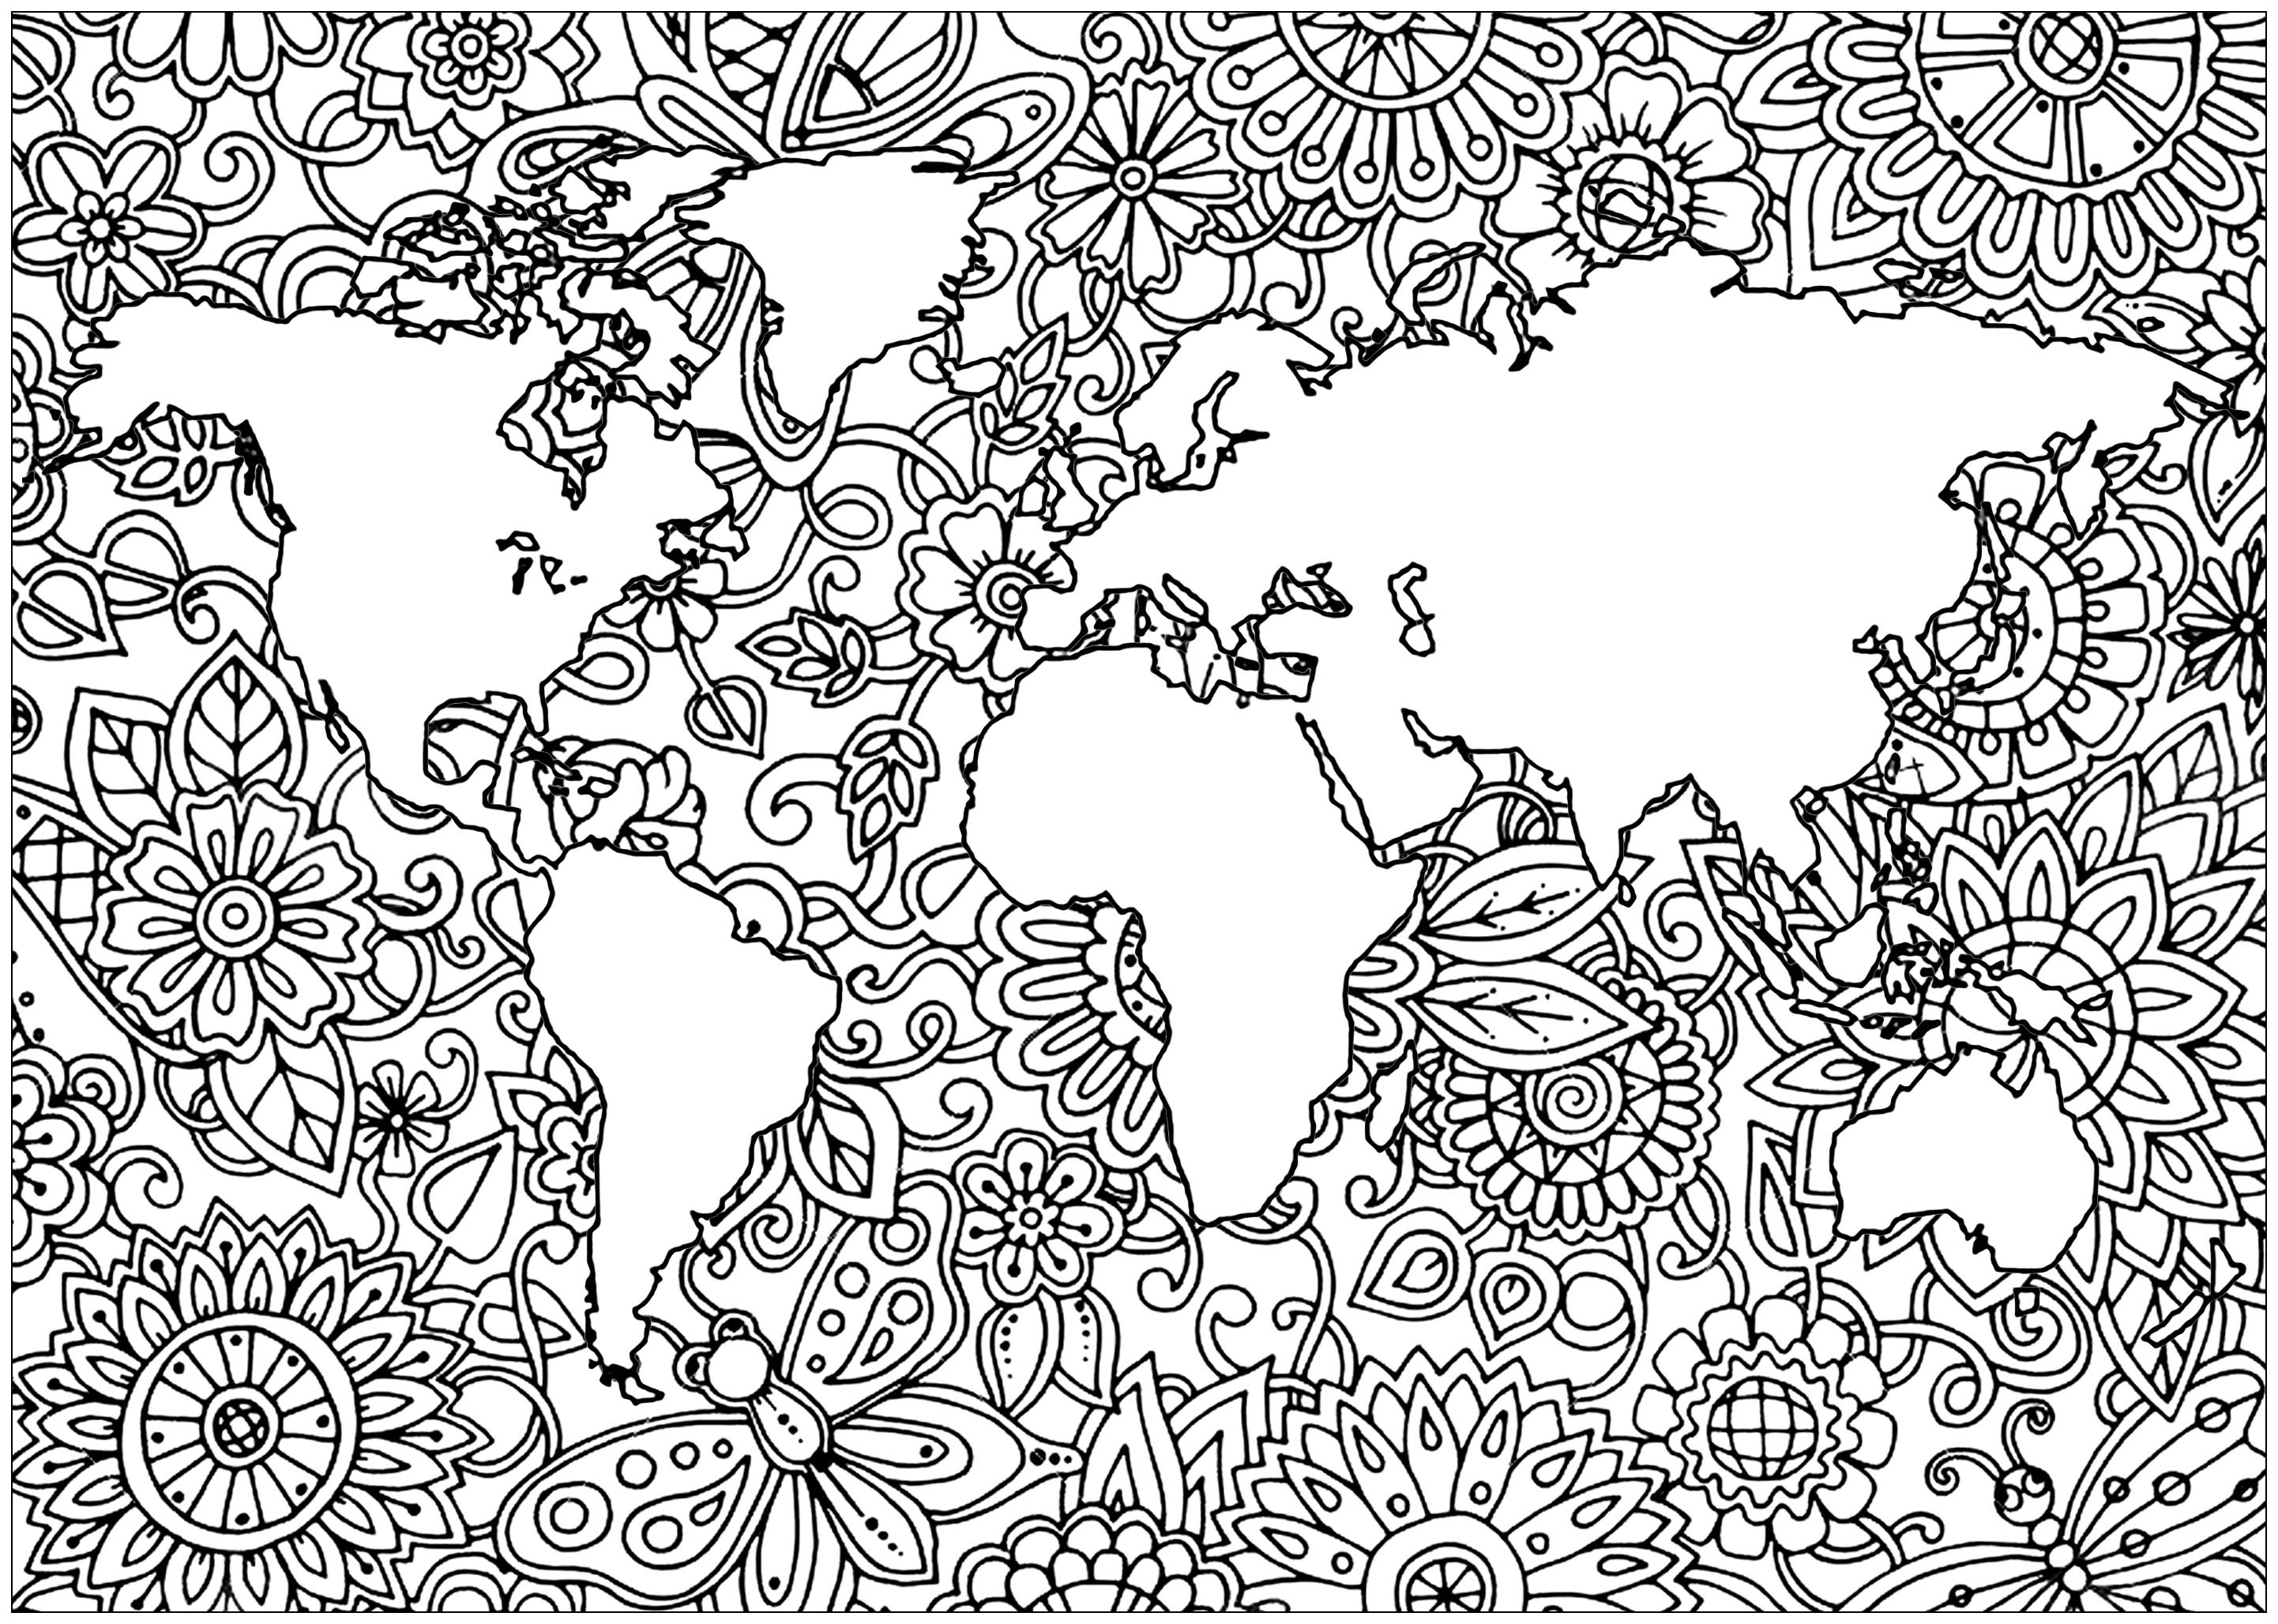 El planeta Tierra y sus continentes, con hermosas Flores en los mares, Artista : Art'Isabelle